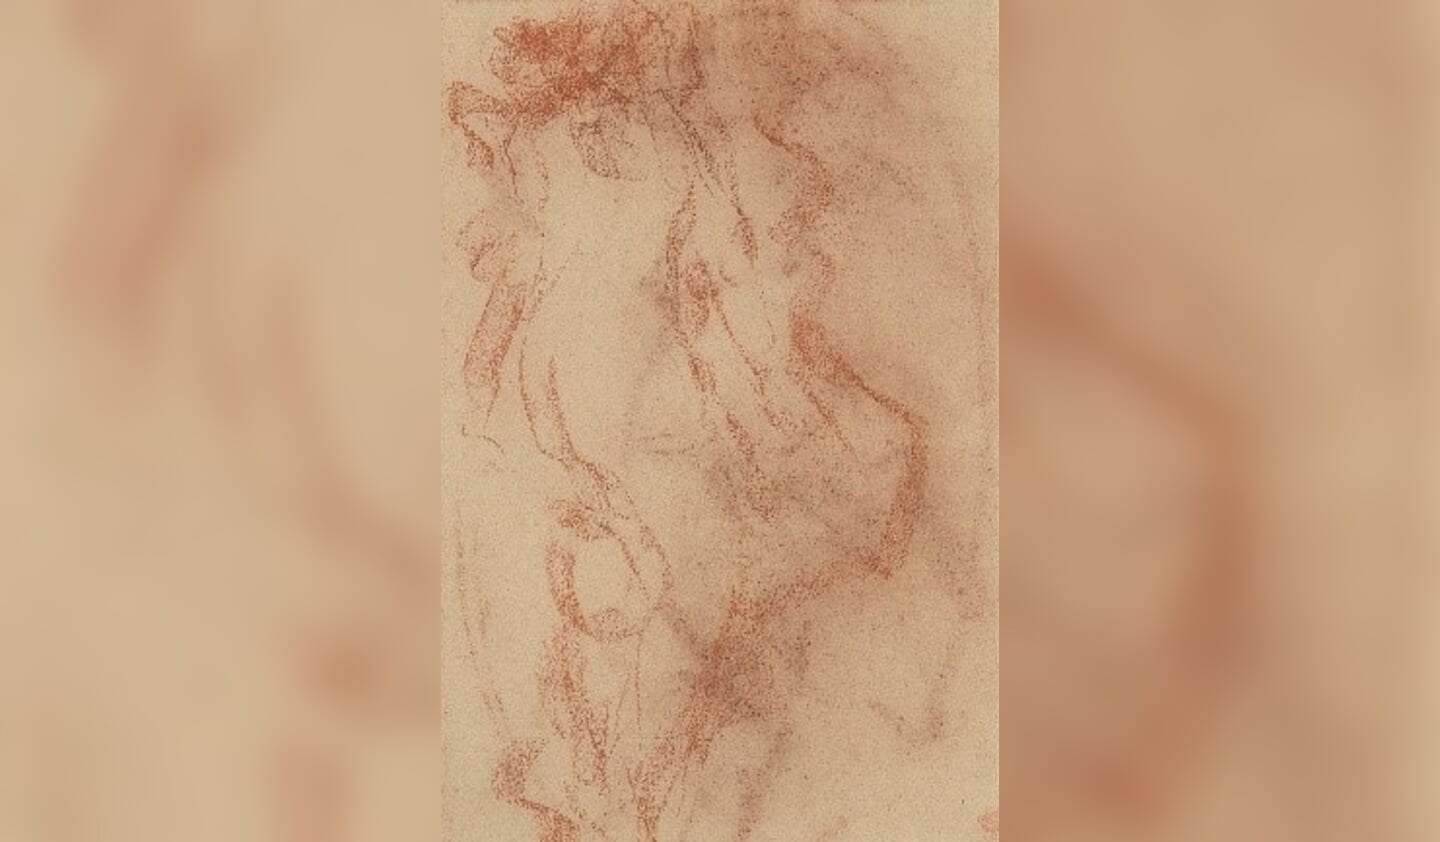  Bij Kunsthandel Pygmalion vond een unieke impressionistische tekening van een vrouwelijk naakt van de internationaal befaamde kunstschilder Antonio Mancini (1852 - 1930) een nieuwe eigenaar.